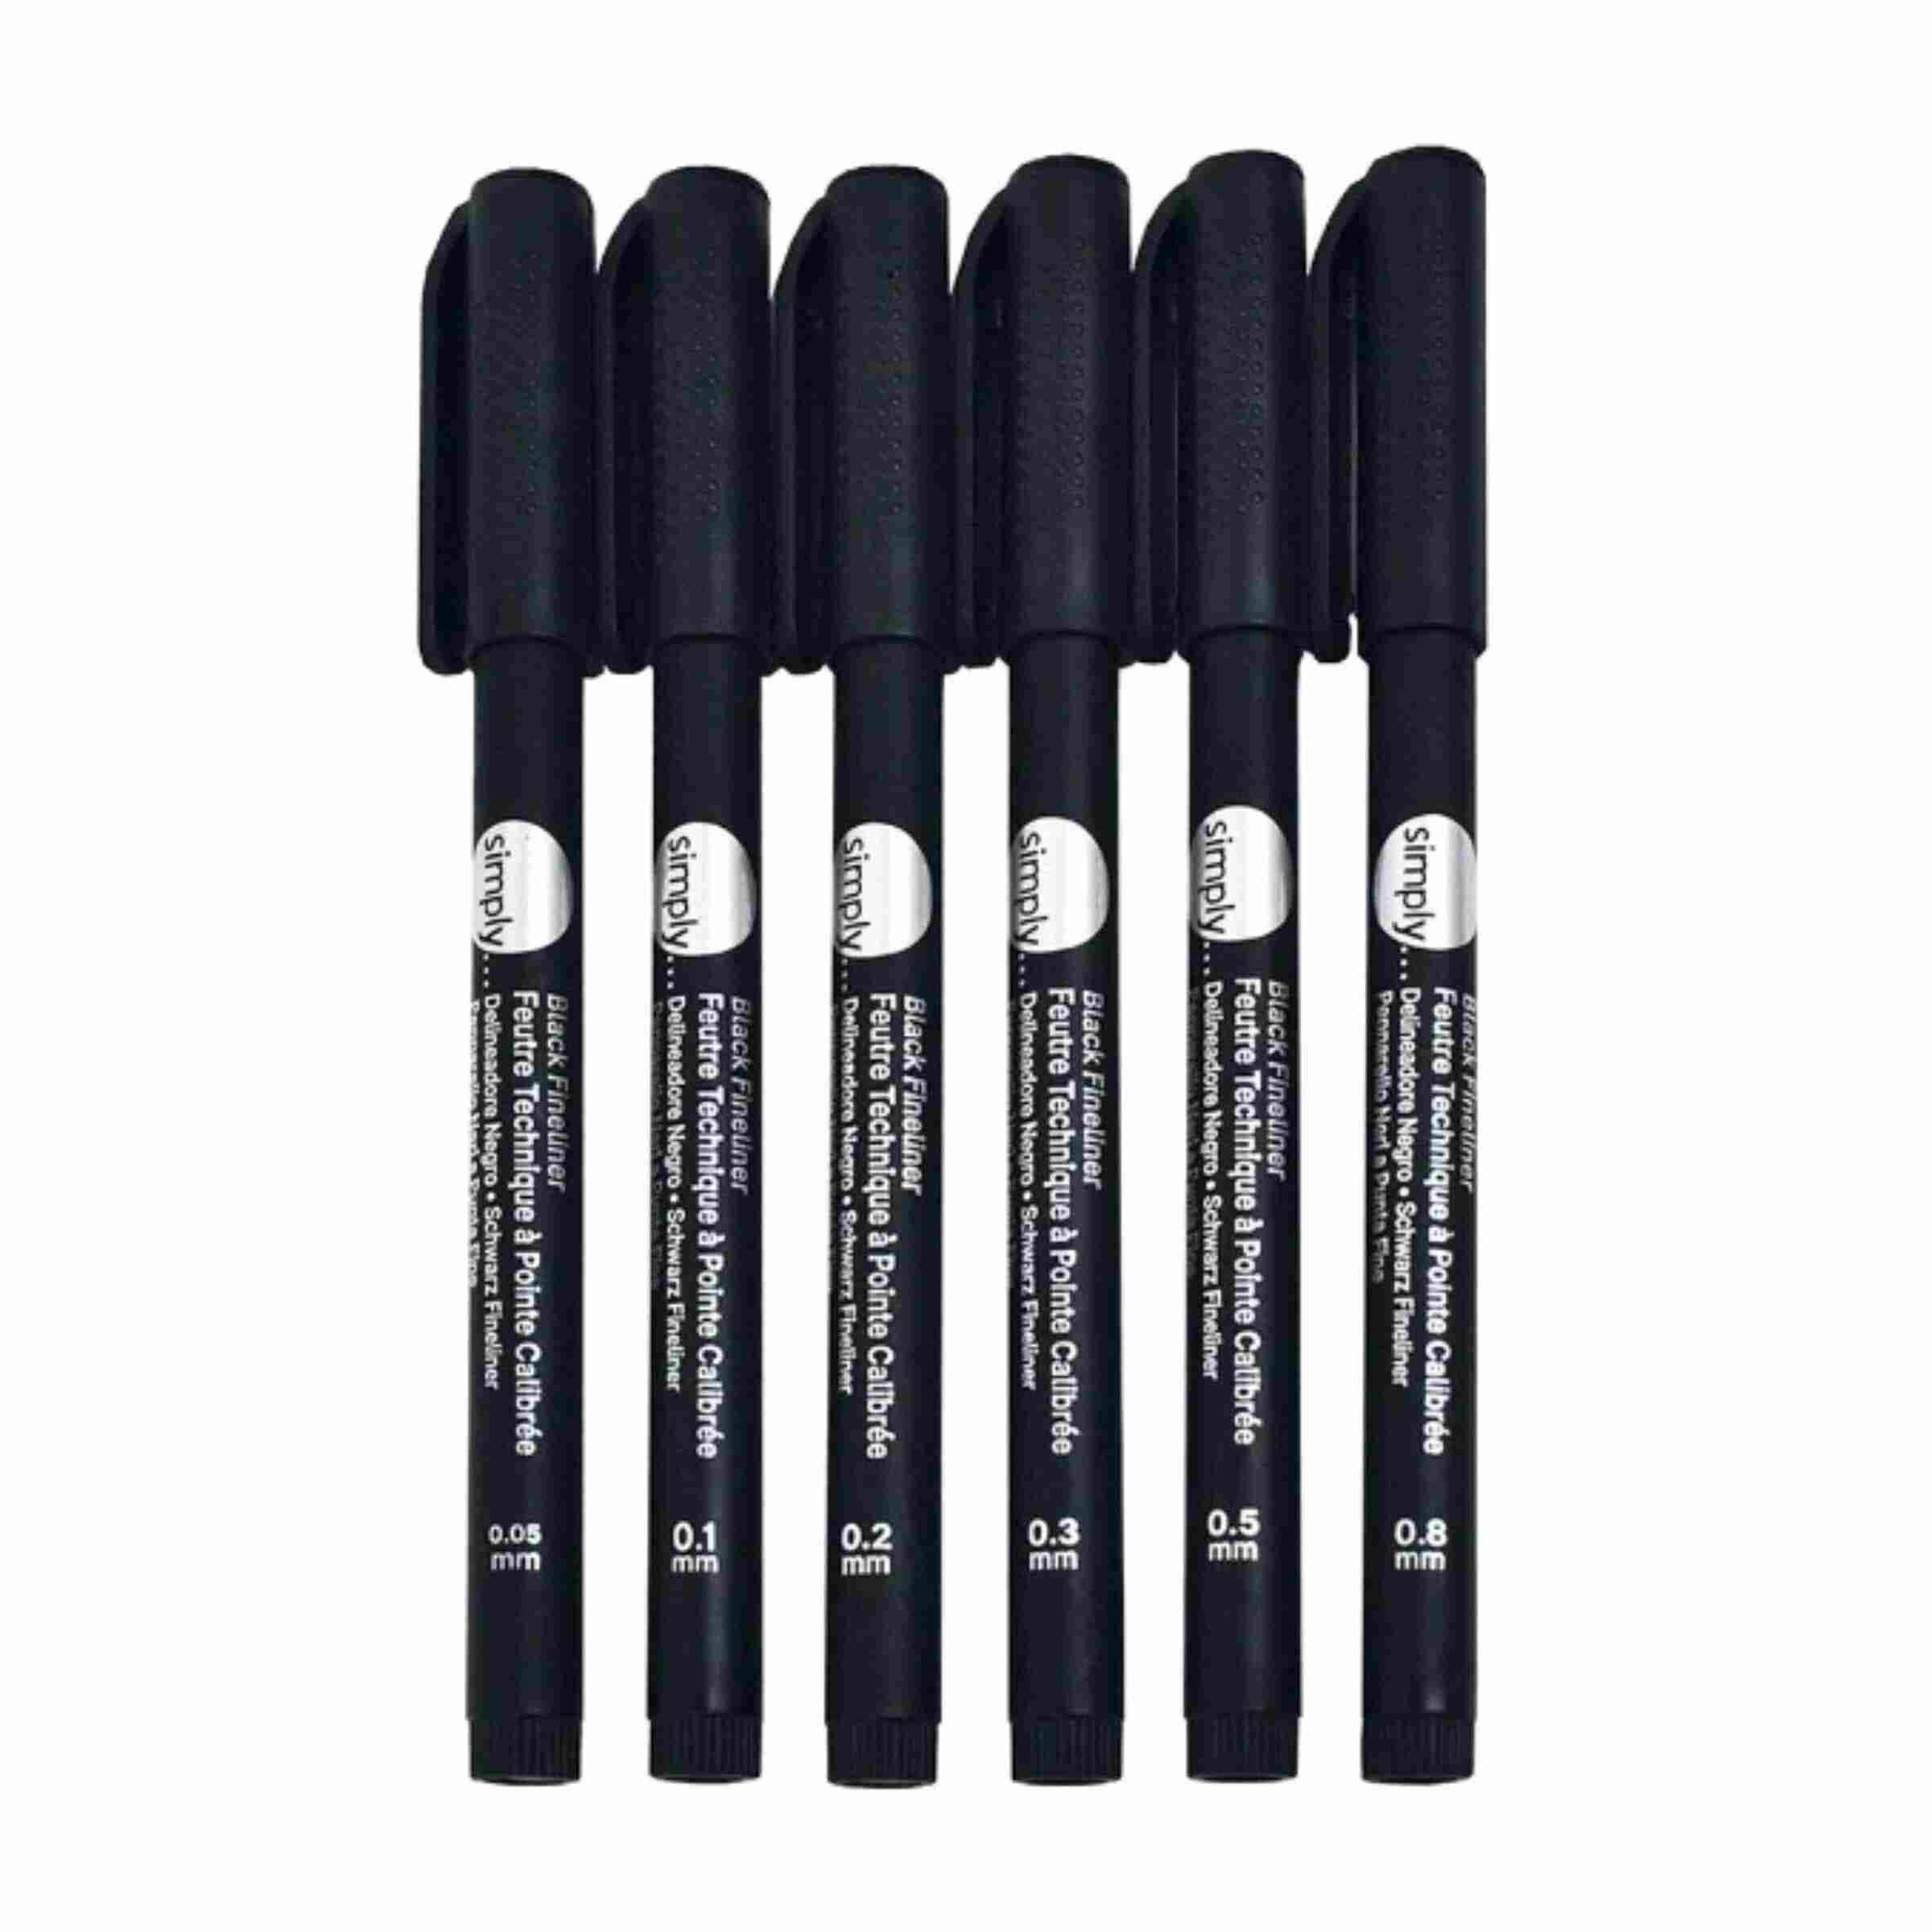 Daler Rowney Simply Black Fineliner Pen Set of 6 Pcs